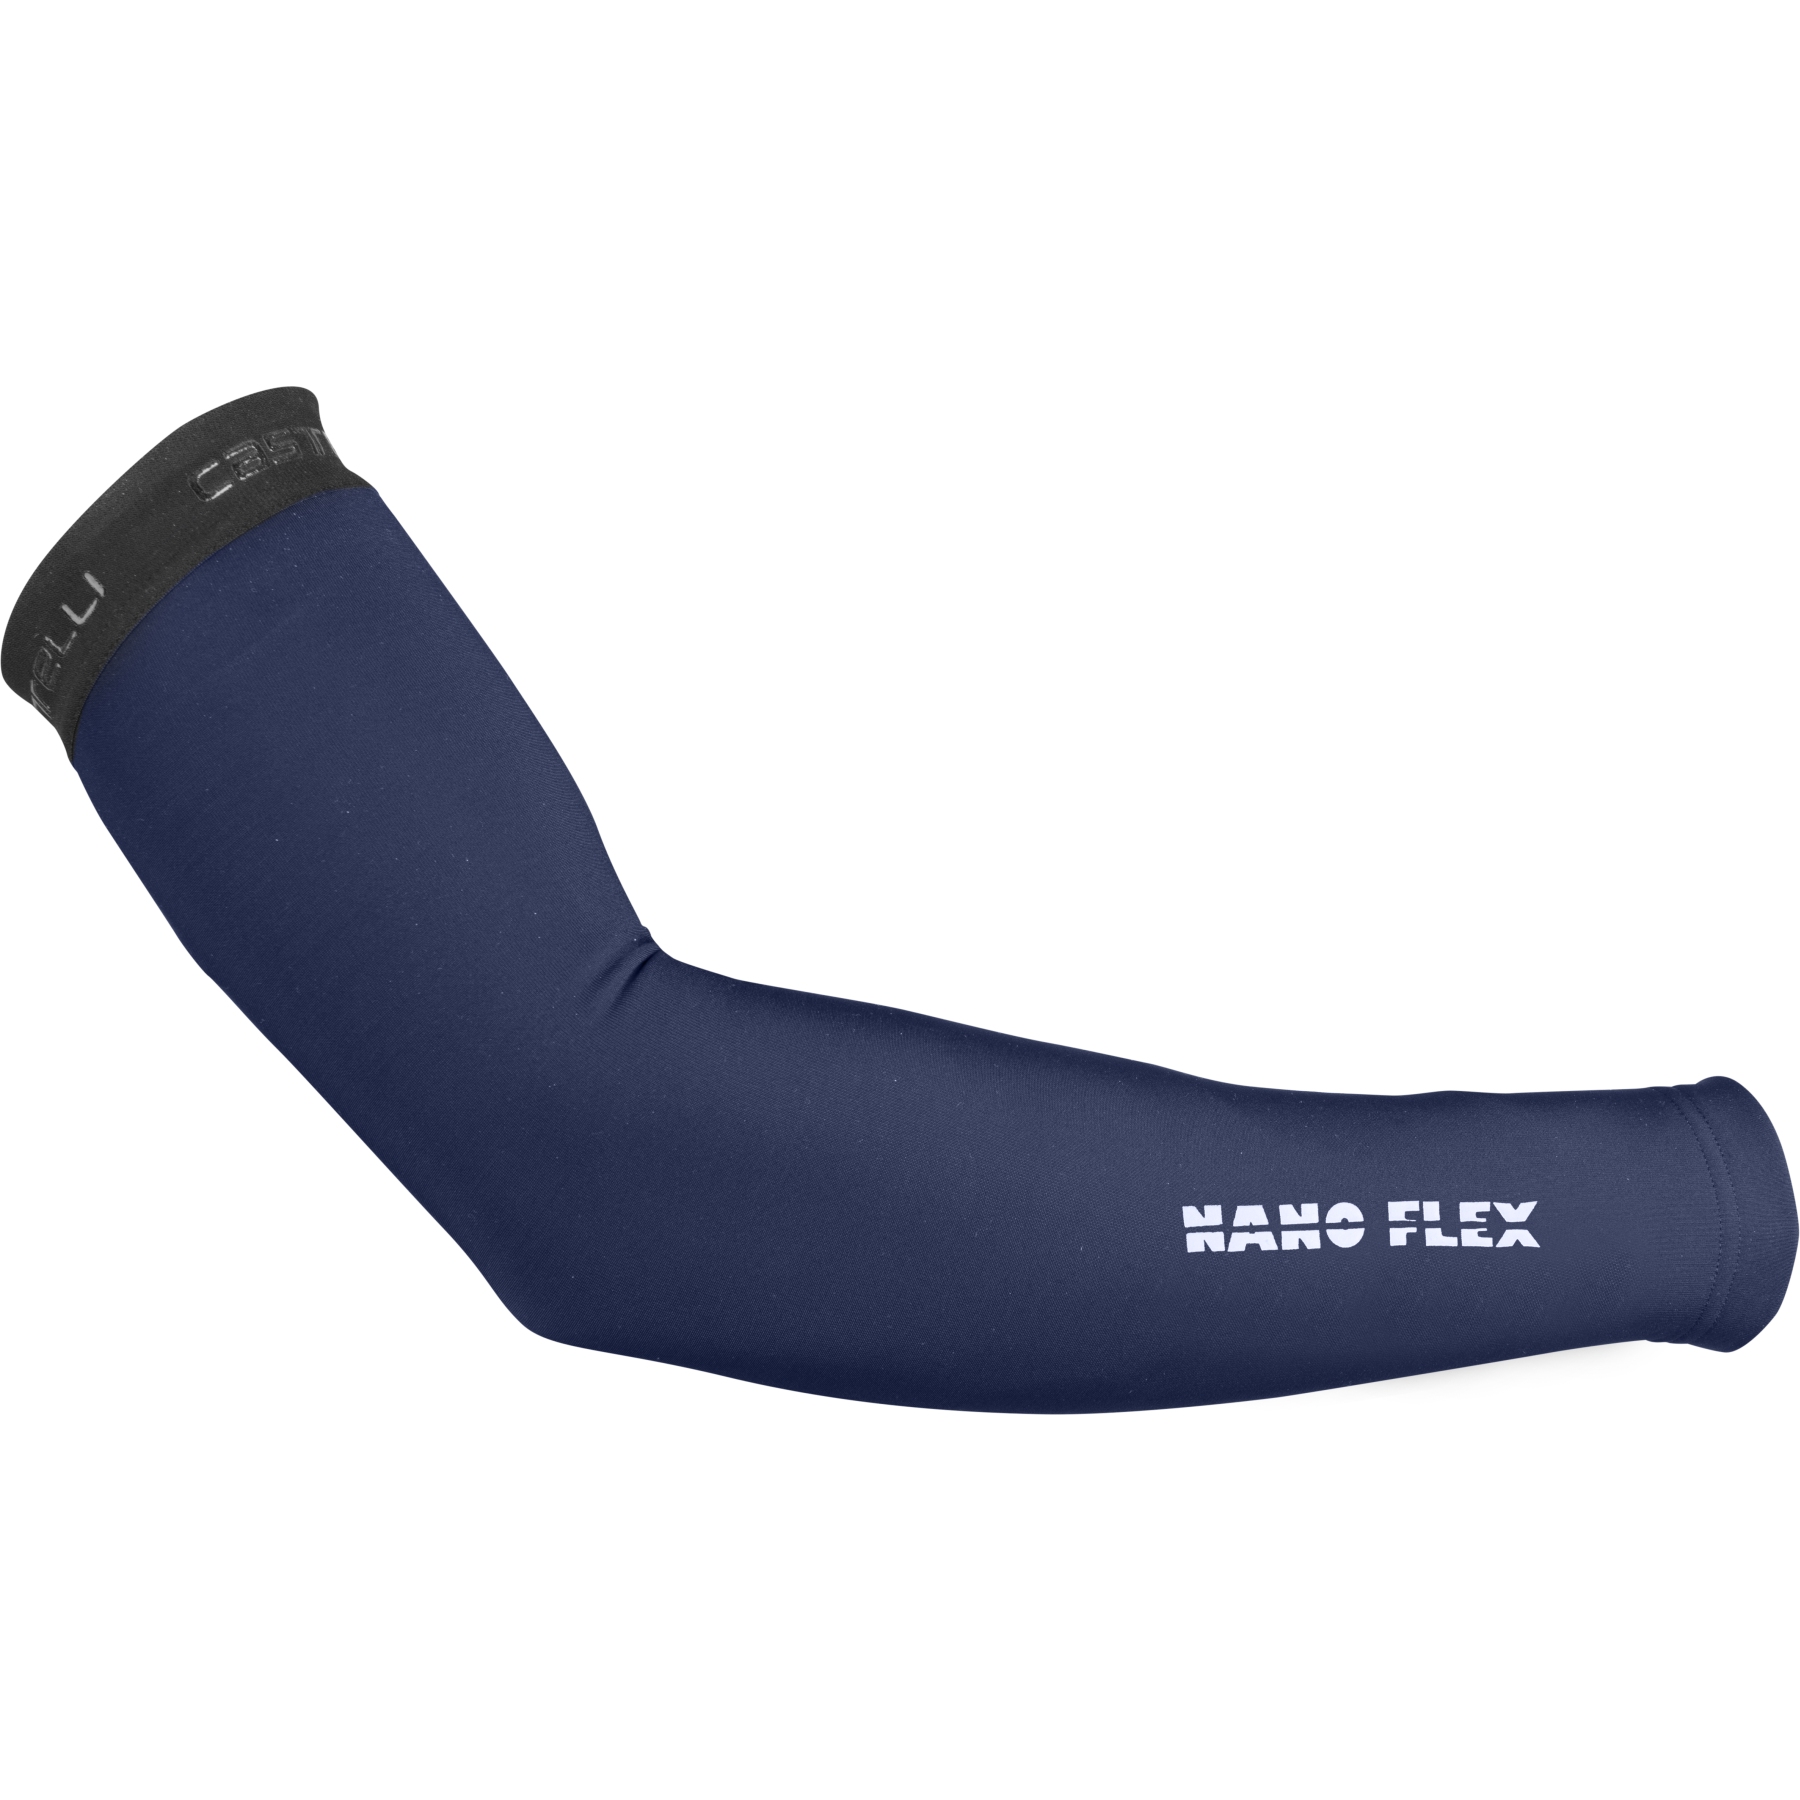 Produktbild von Castelli Nano Flex 3G Armlinge - belgian blue 424